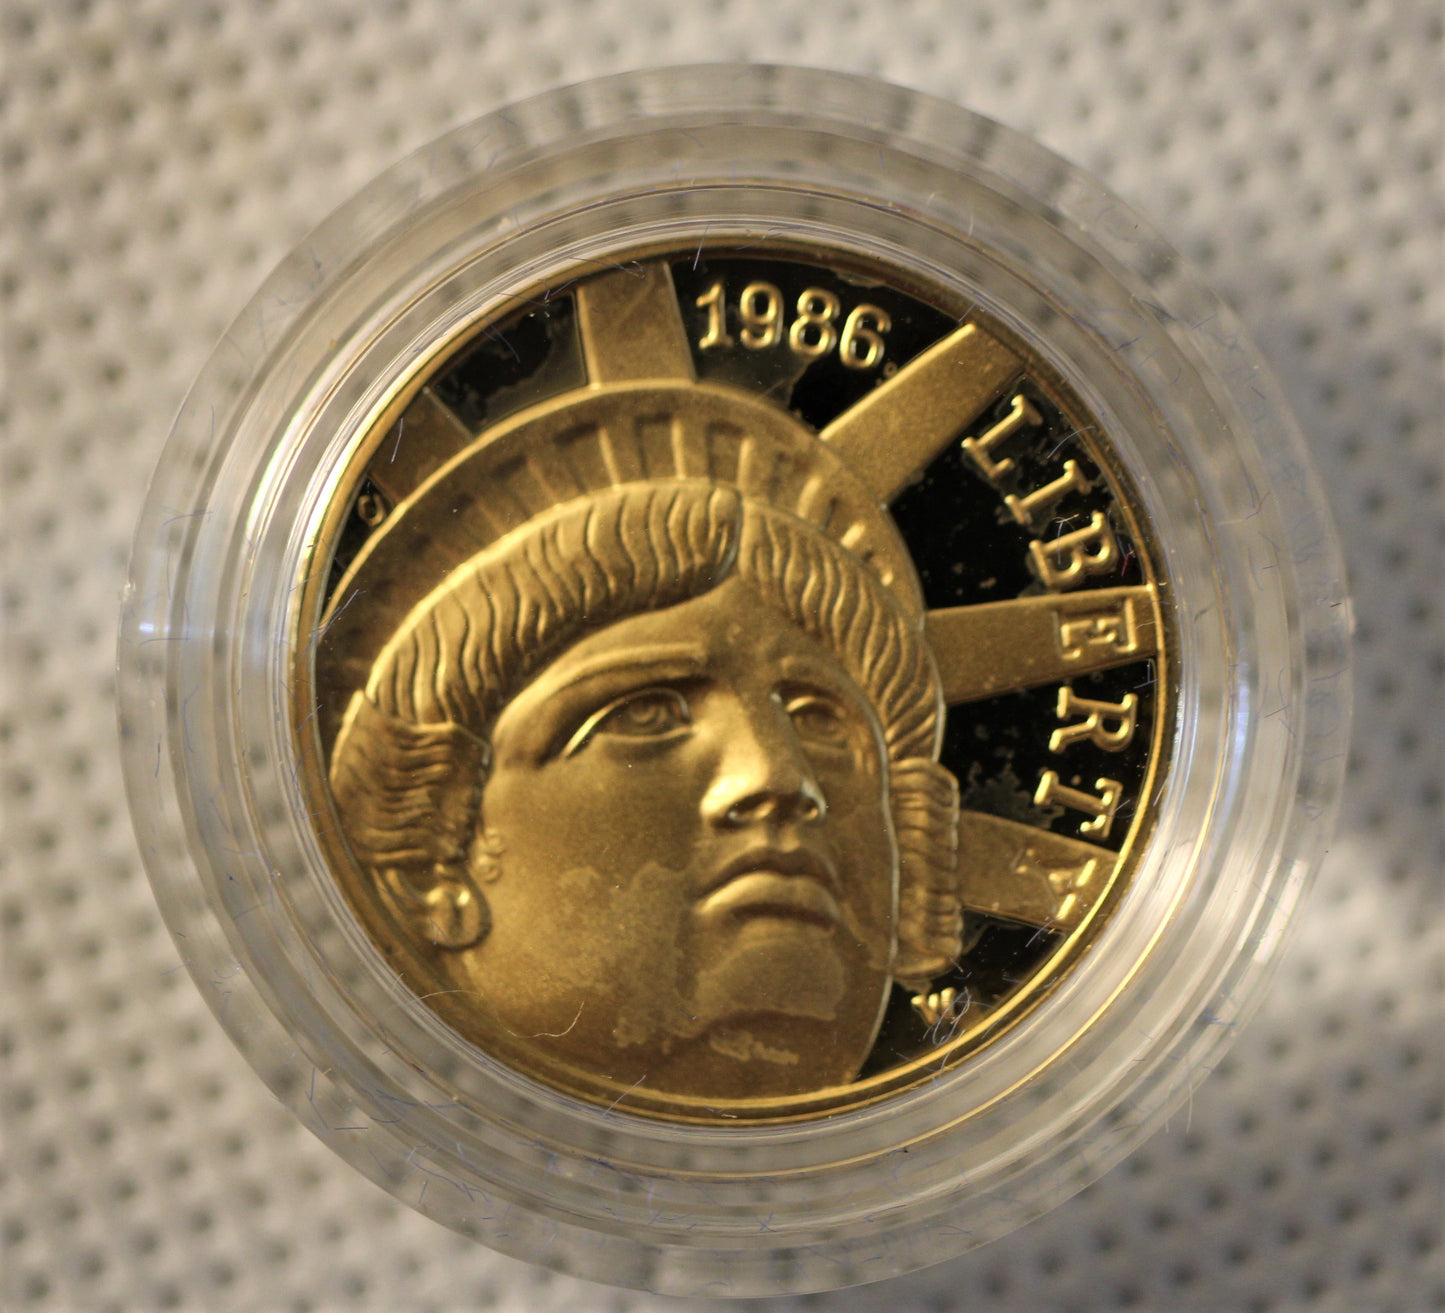 1986 Liberty Commemorative 3 Coin Proof Set - Gold & Silver - w/ Box & COA